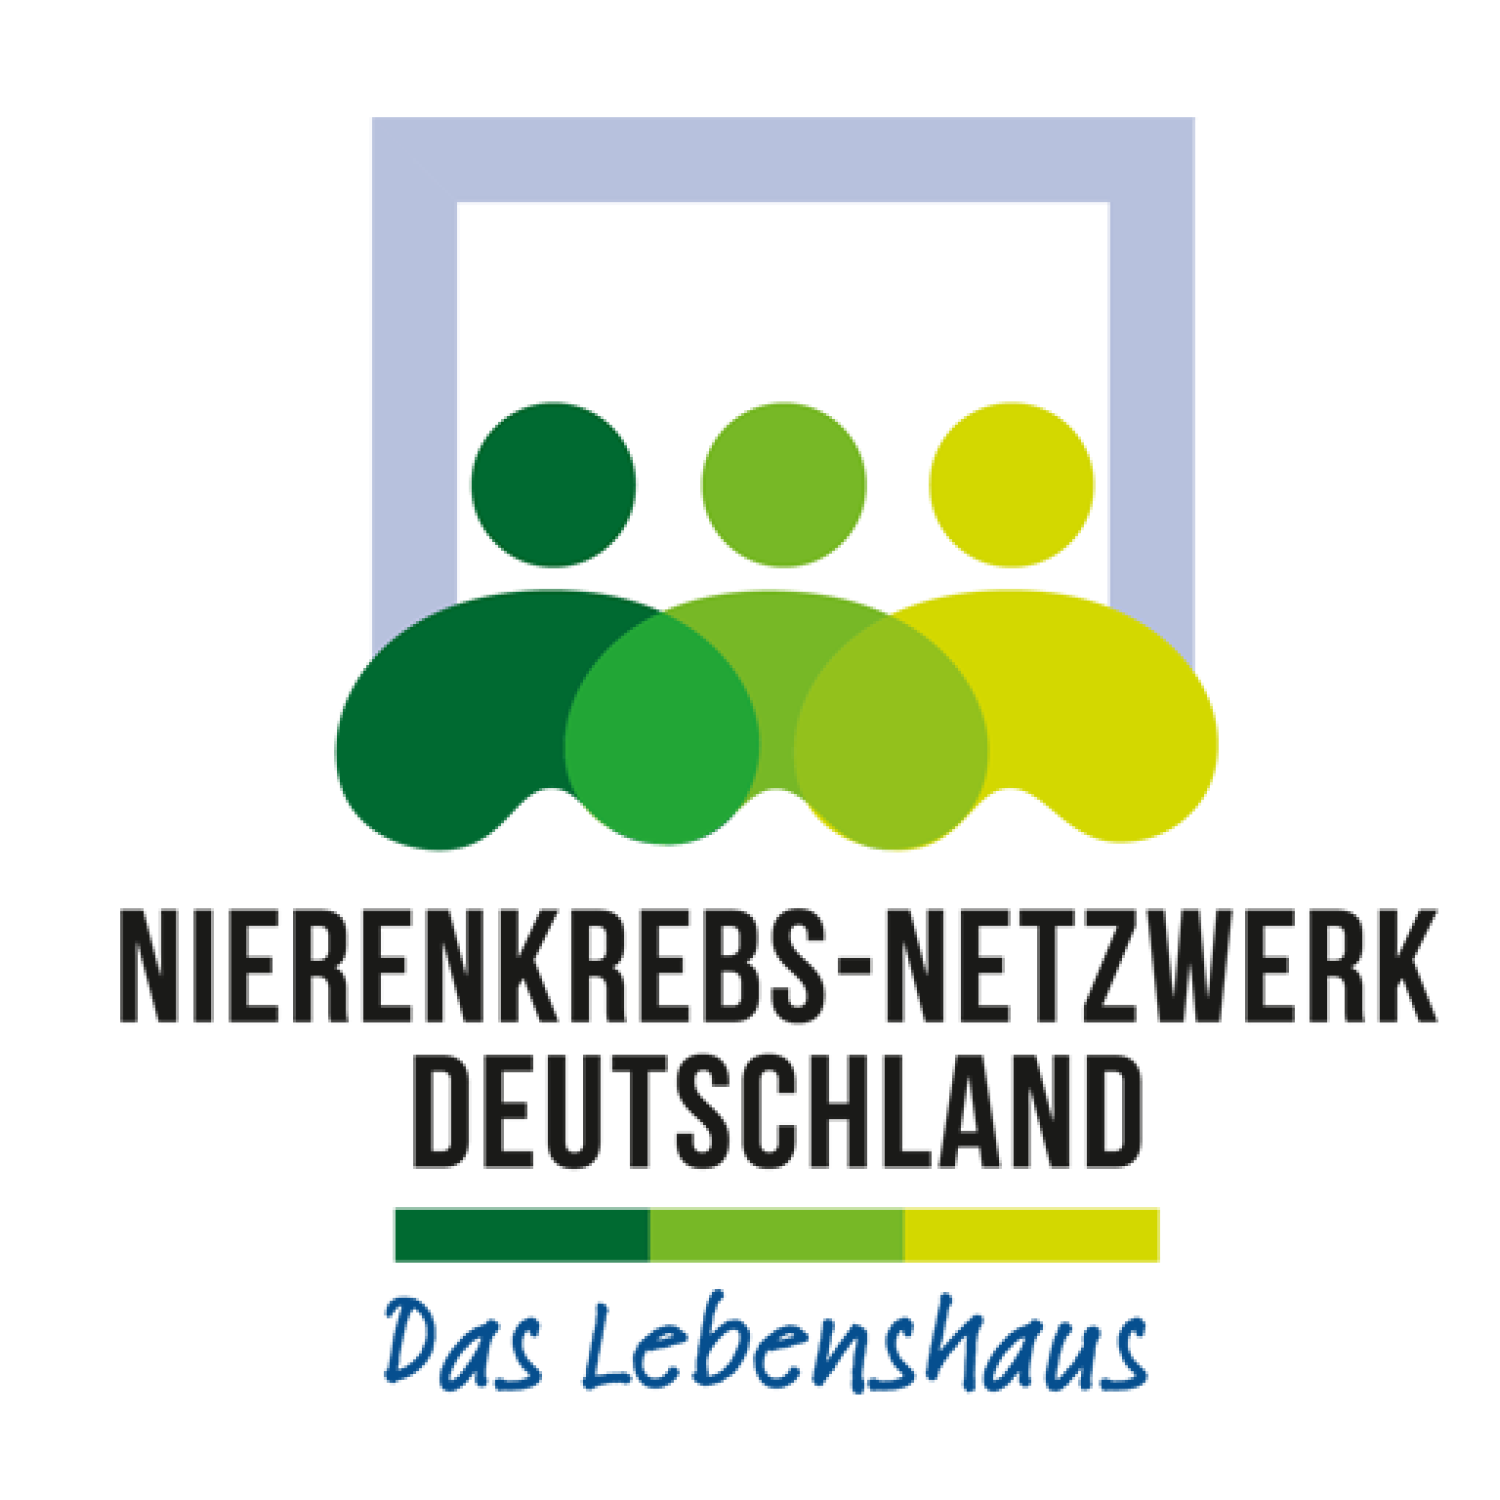 Das Lebenshaus heißt jetzt Nierenkrebs-Netzwerk Deutschland!